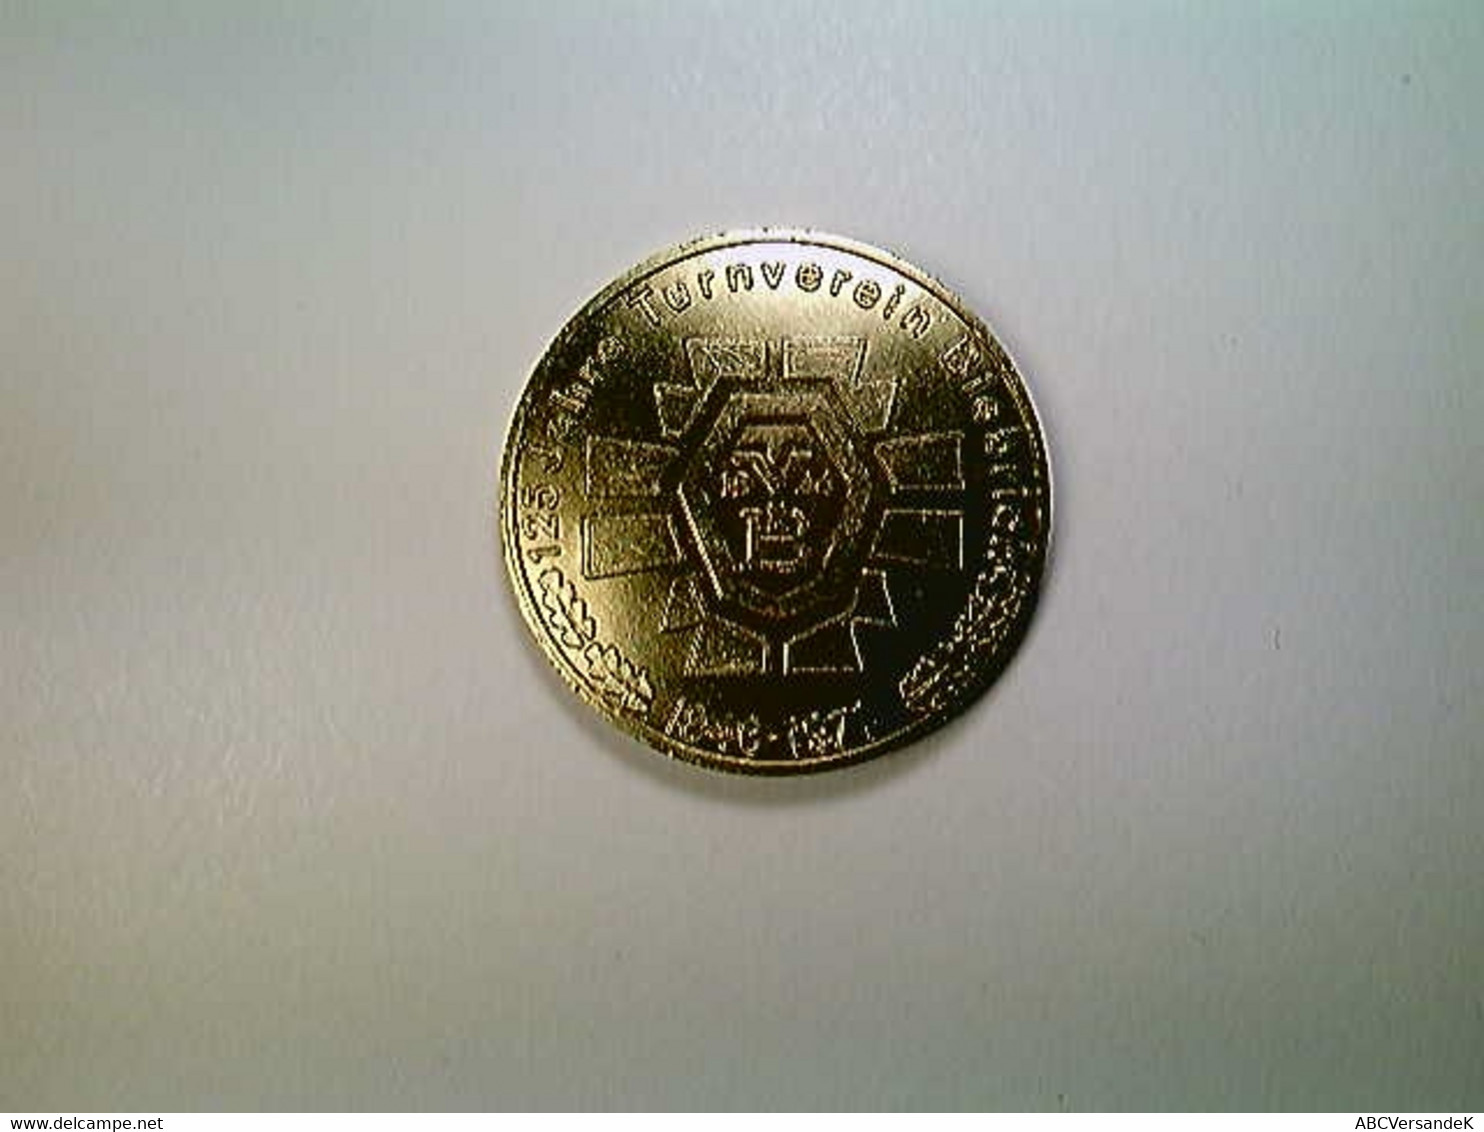 Medaille Biebrich, 125 Jahre Turnverein 1846-1971 - Numismatique